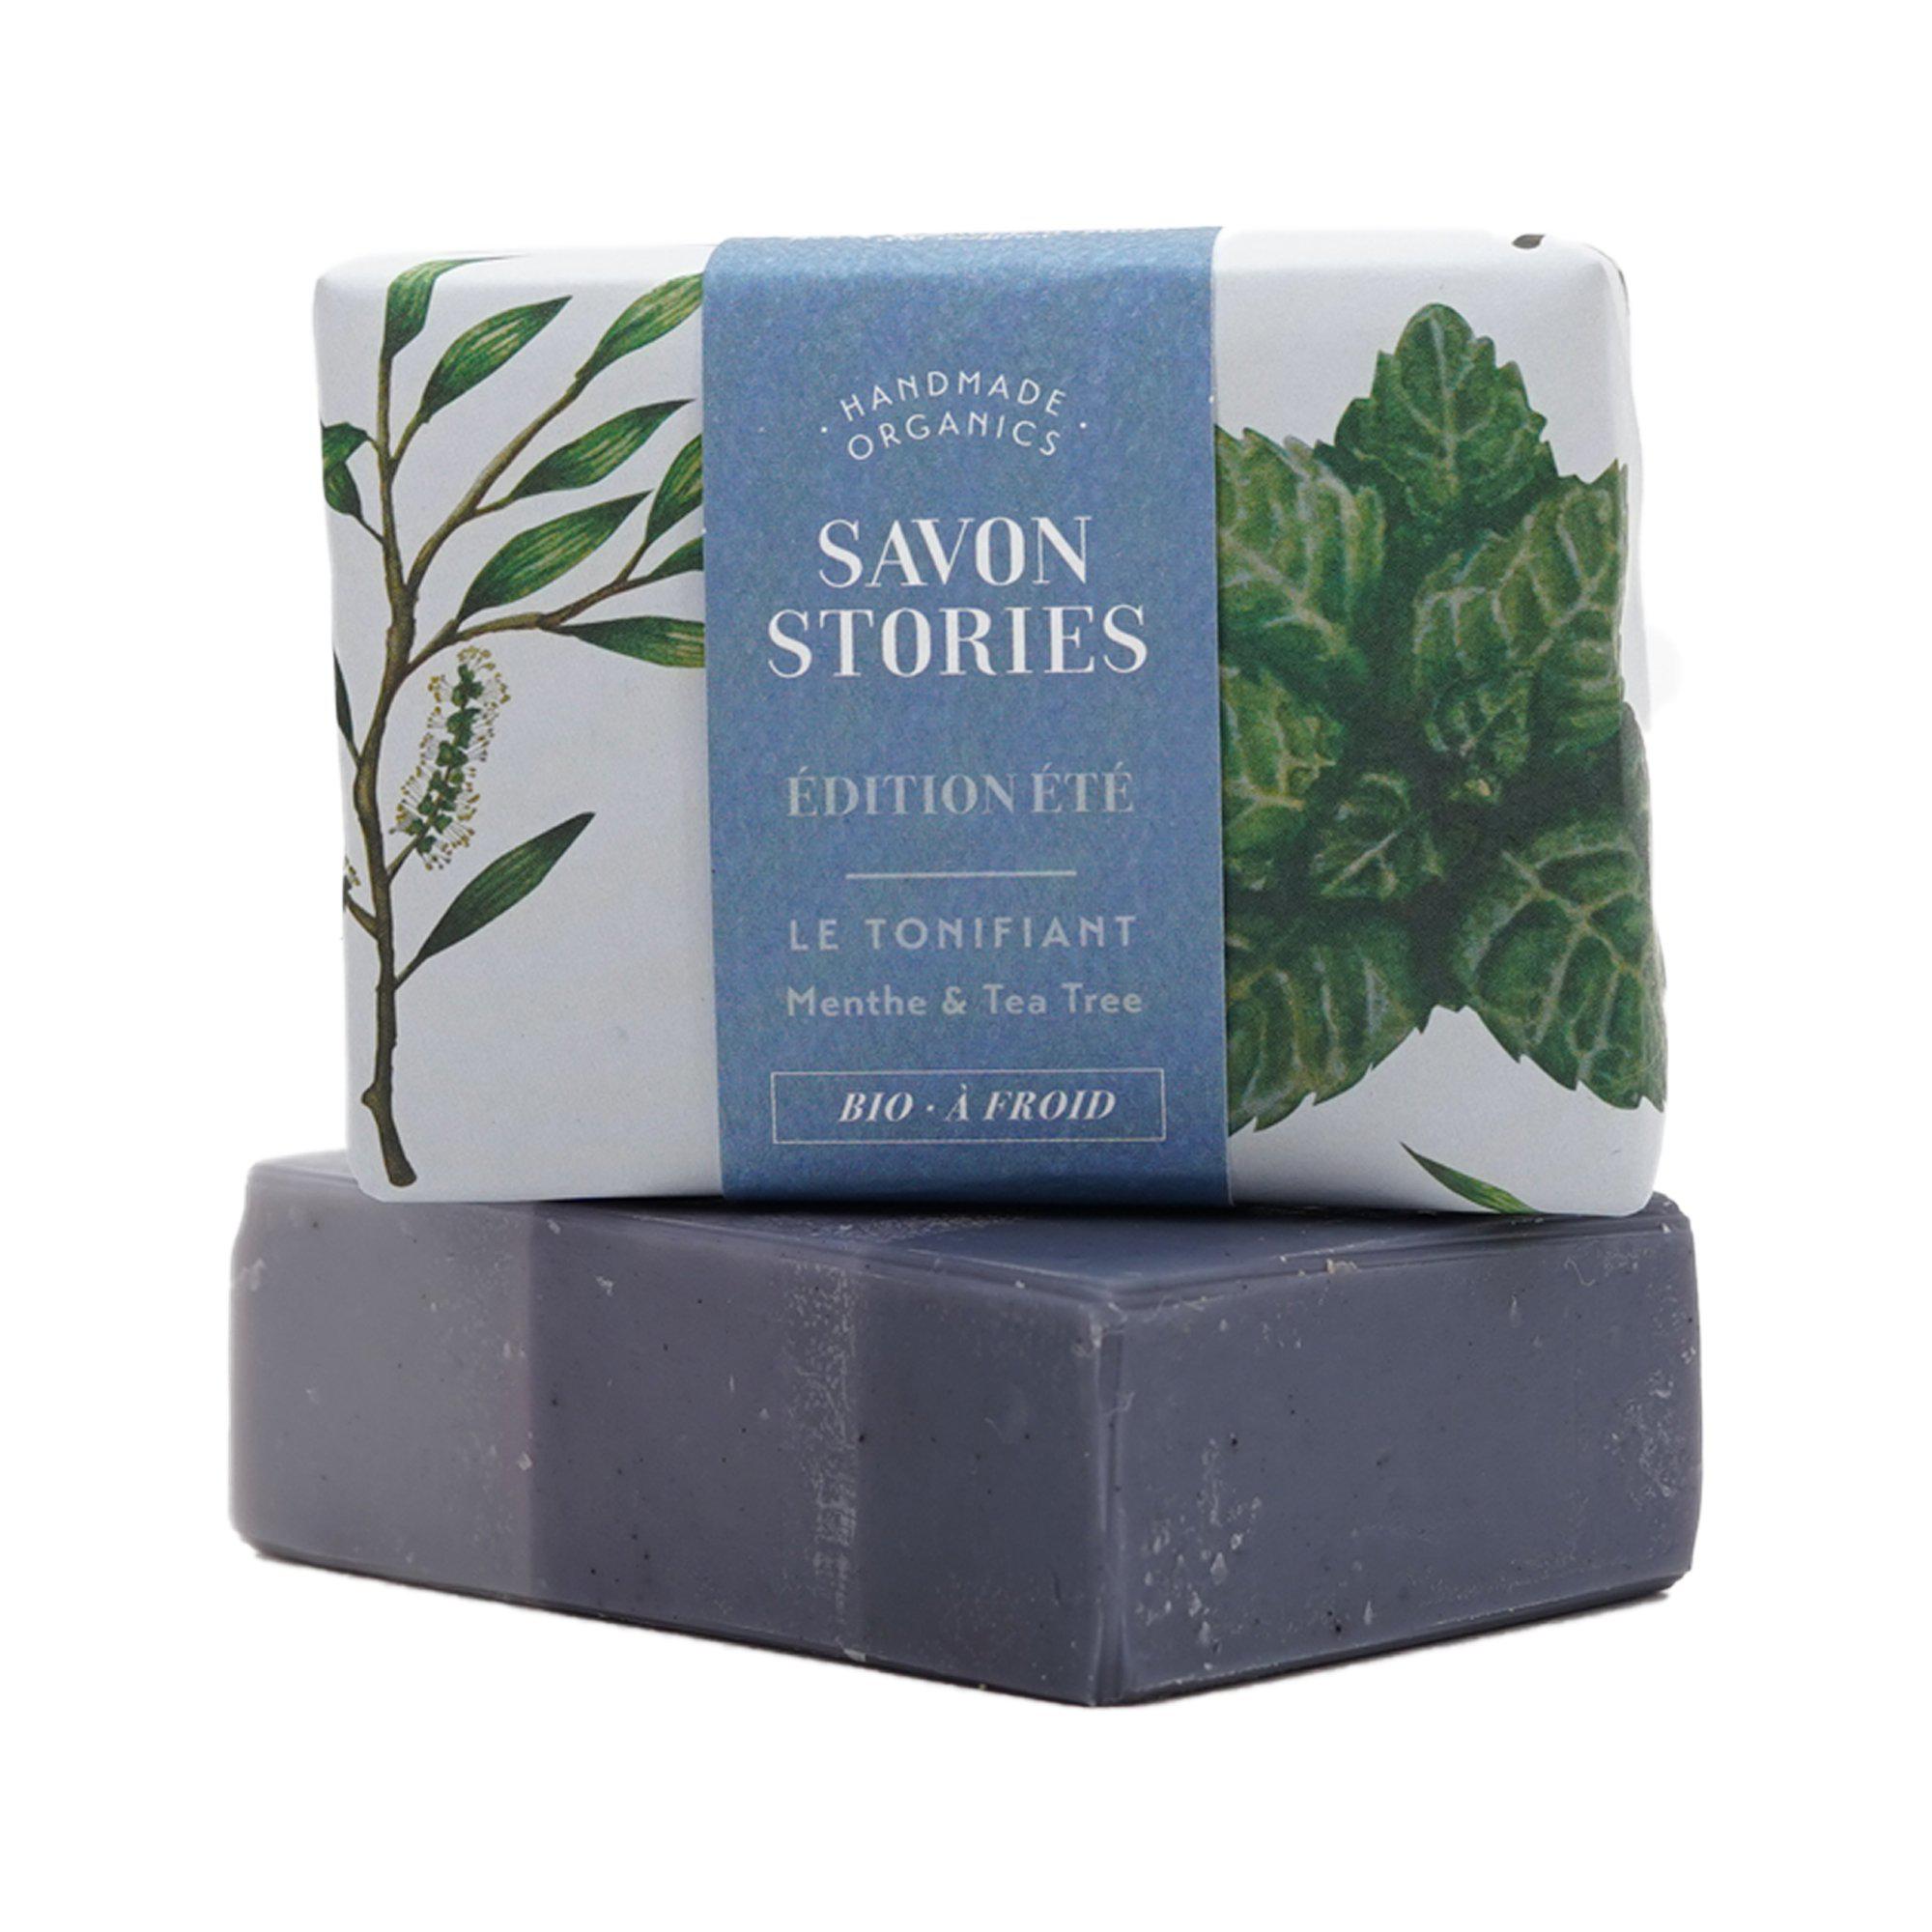 Savon d’Été Le Tonifiant Menthe Tea Tree Summer Soap Le Tonifiant Mint Tea Tree - Savon Stories